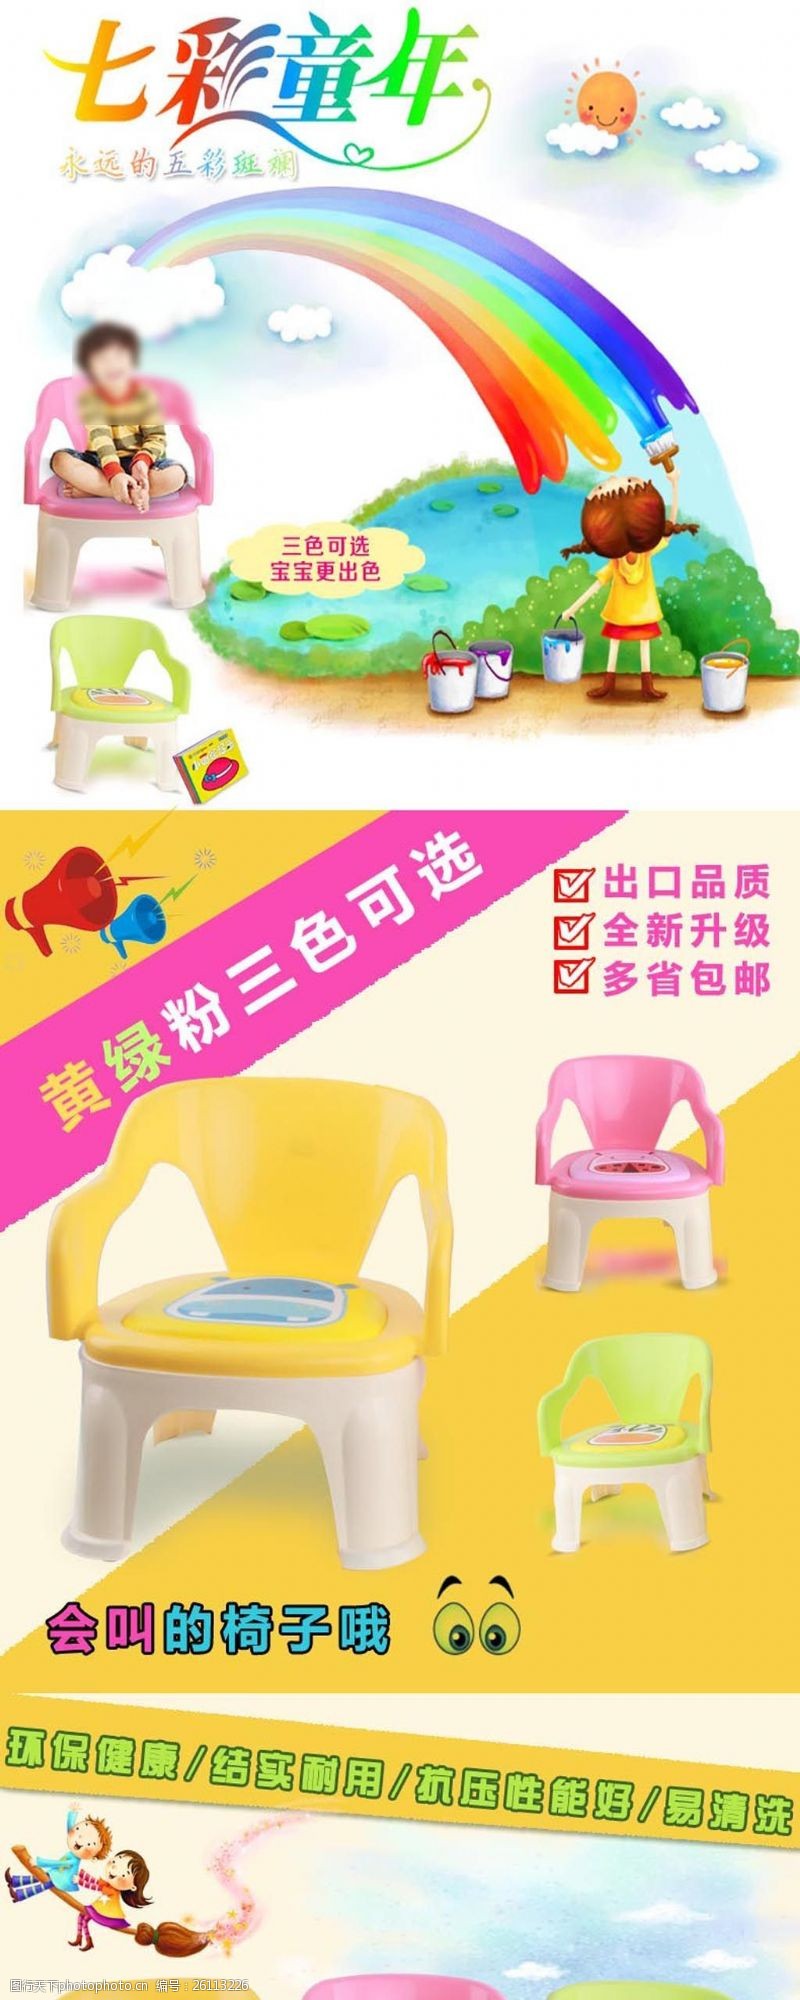 母婴用品小凳子产品展示详情设计图片